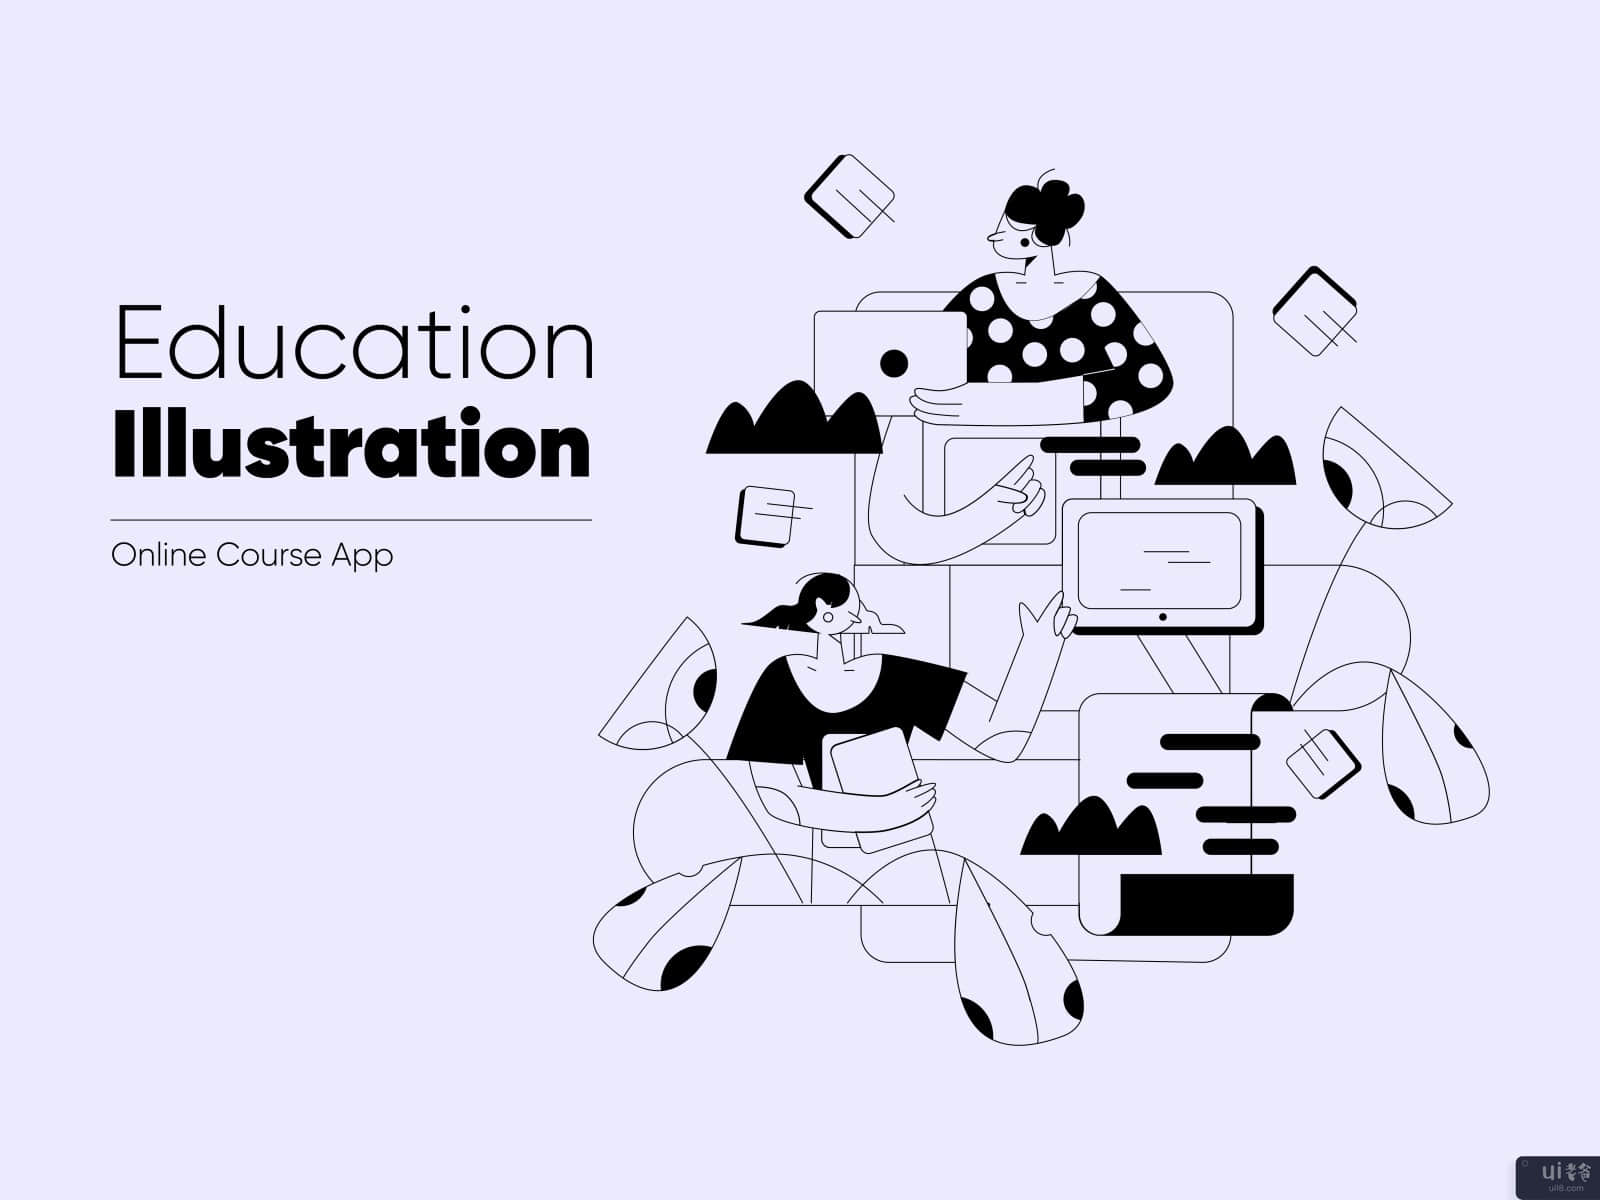 教育。在线课程应用程序(Education: Online Course App)插图